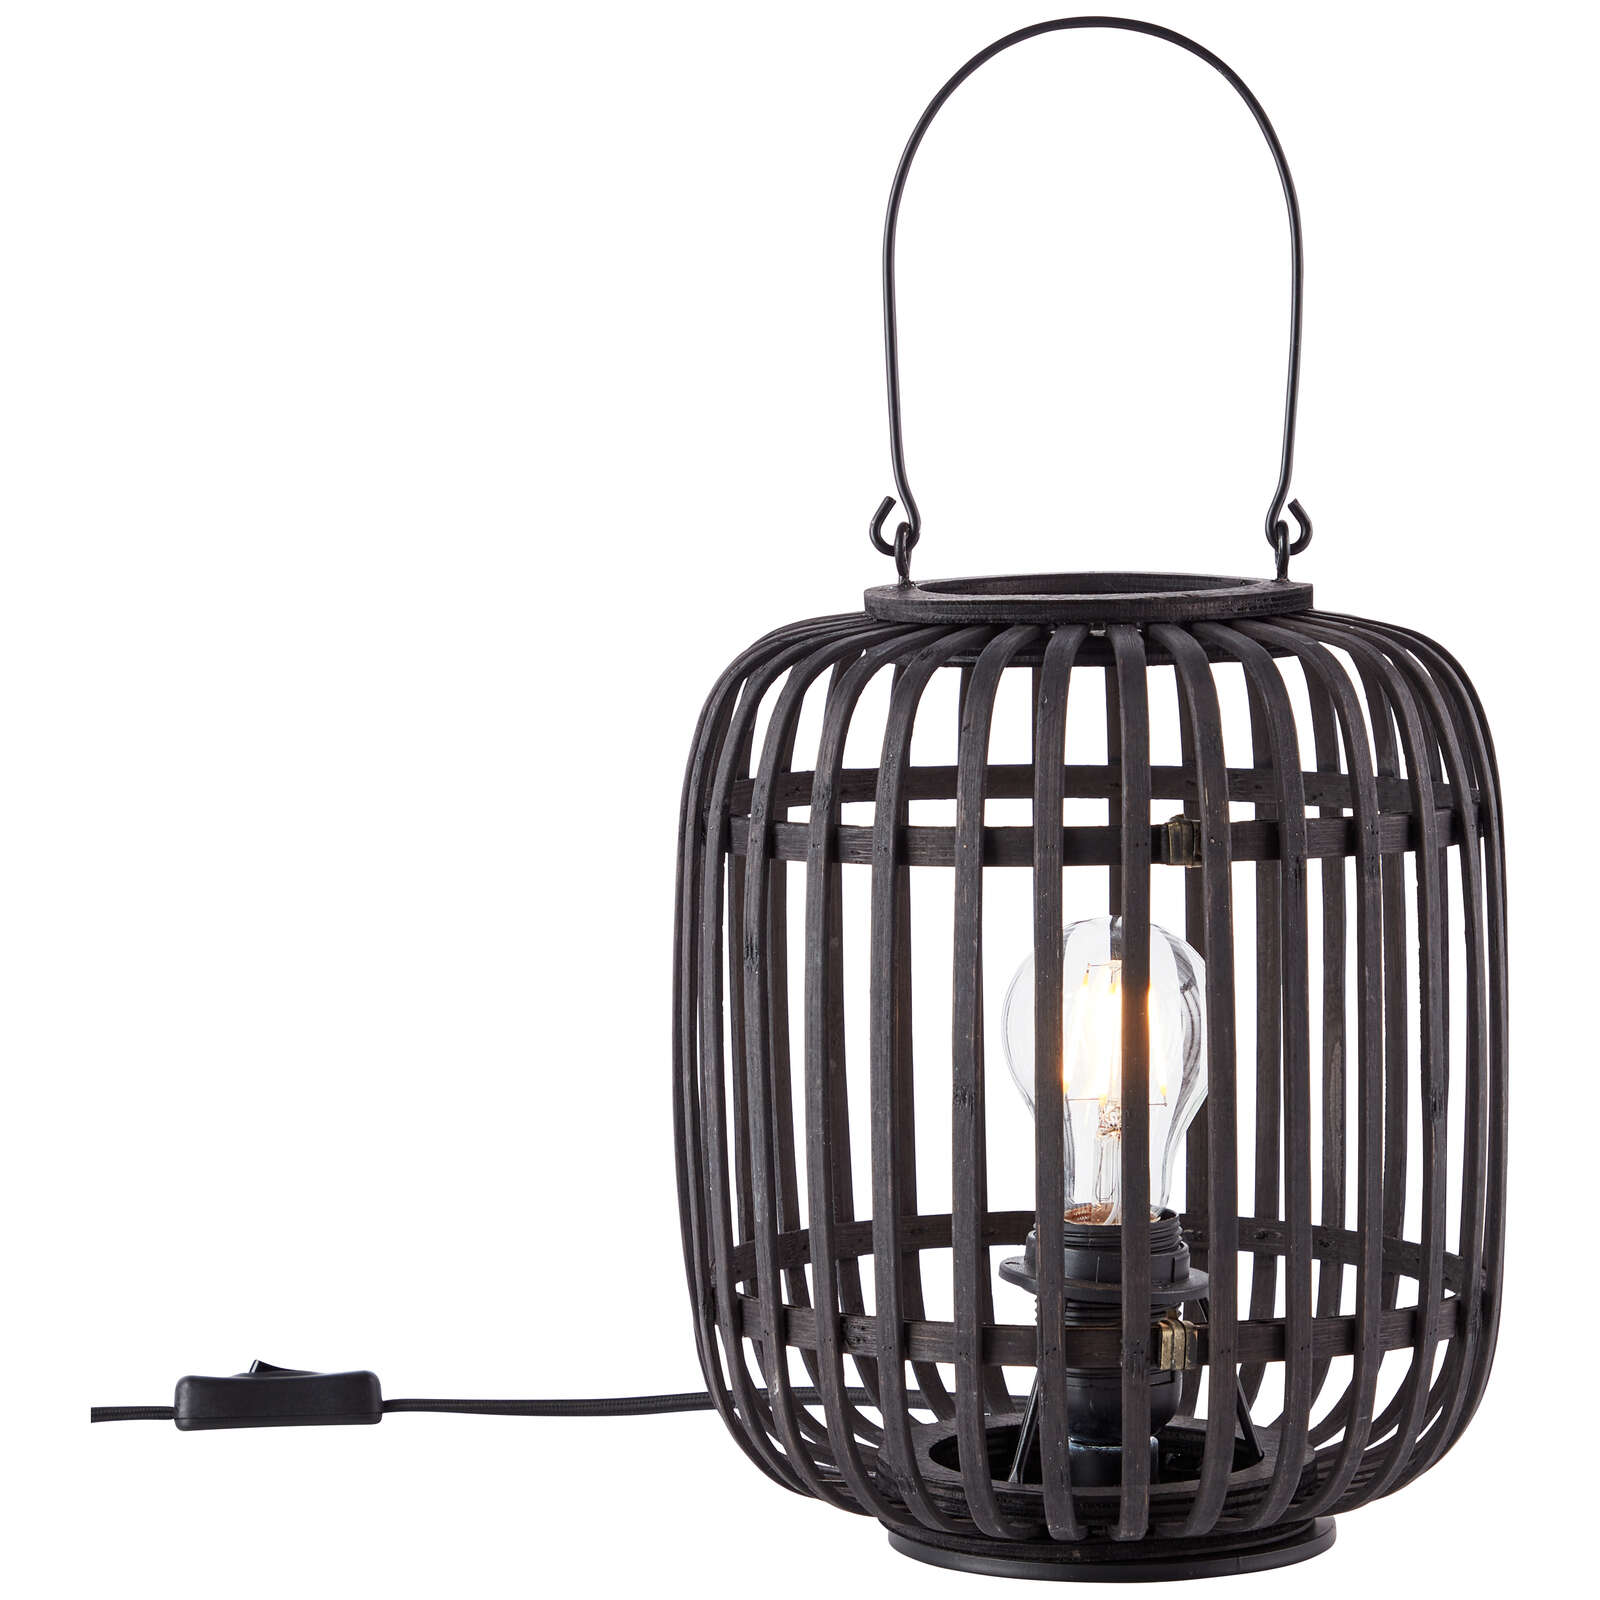             Metal table lamp - Willi 15 - Black
        